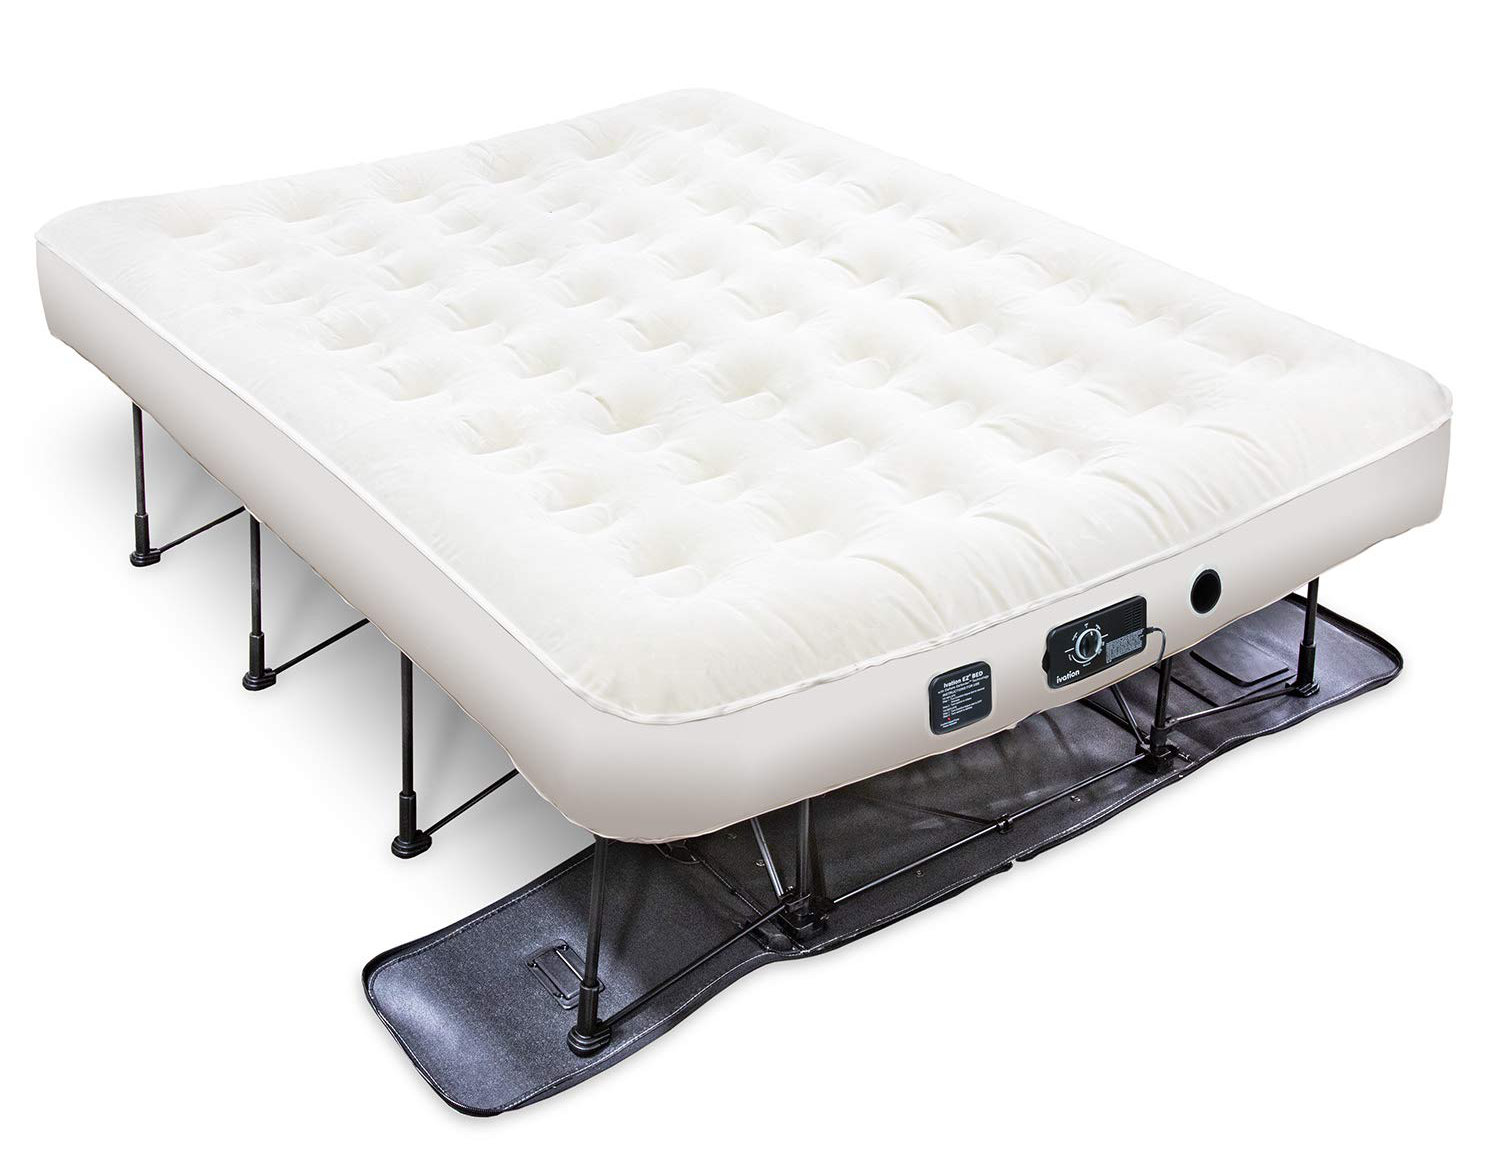 ivation air mattress reviews